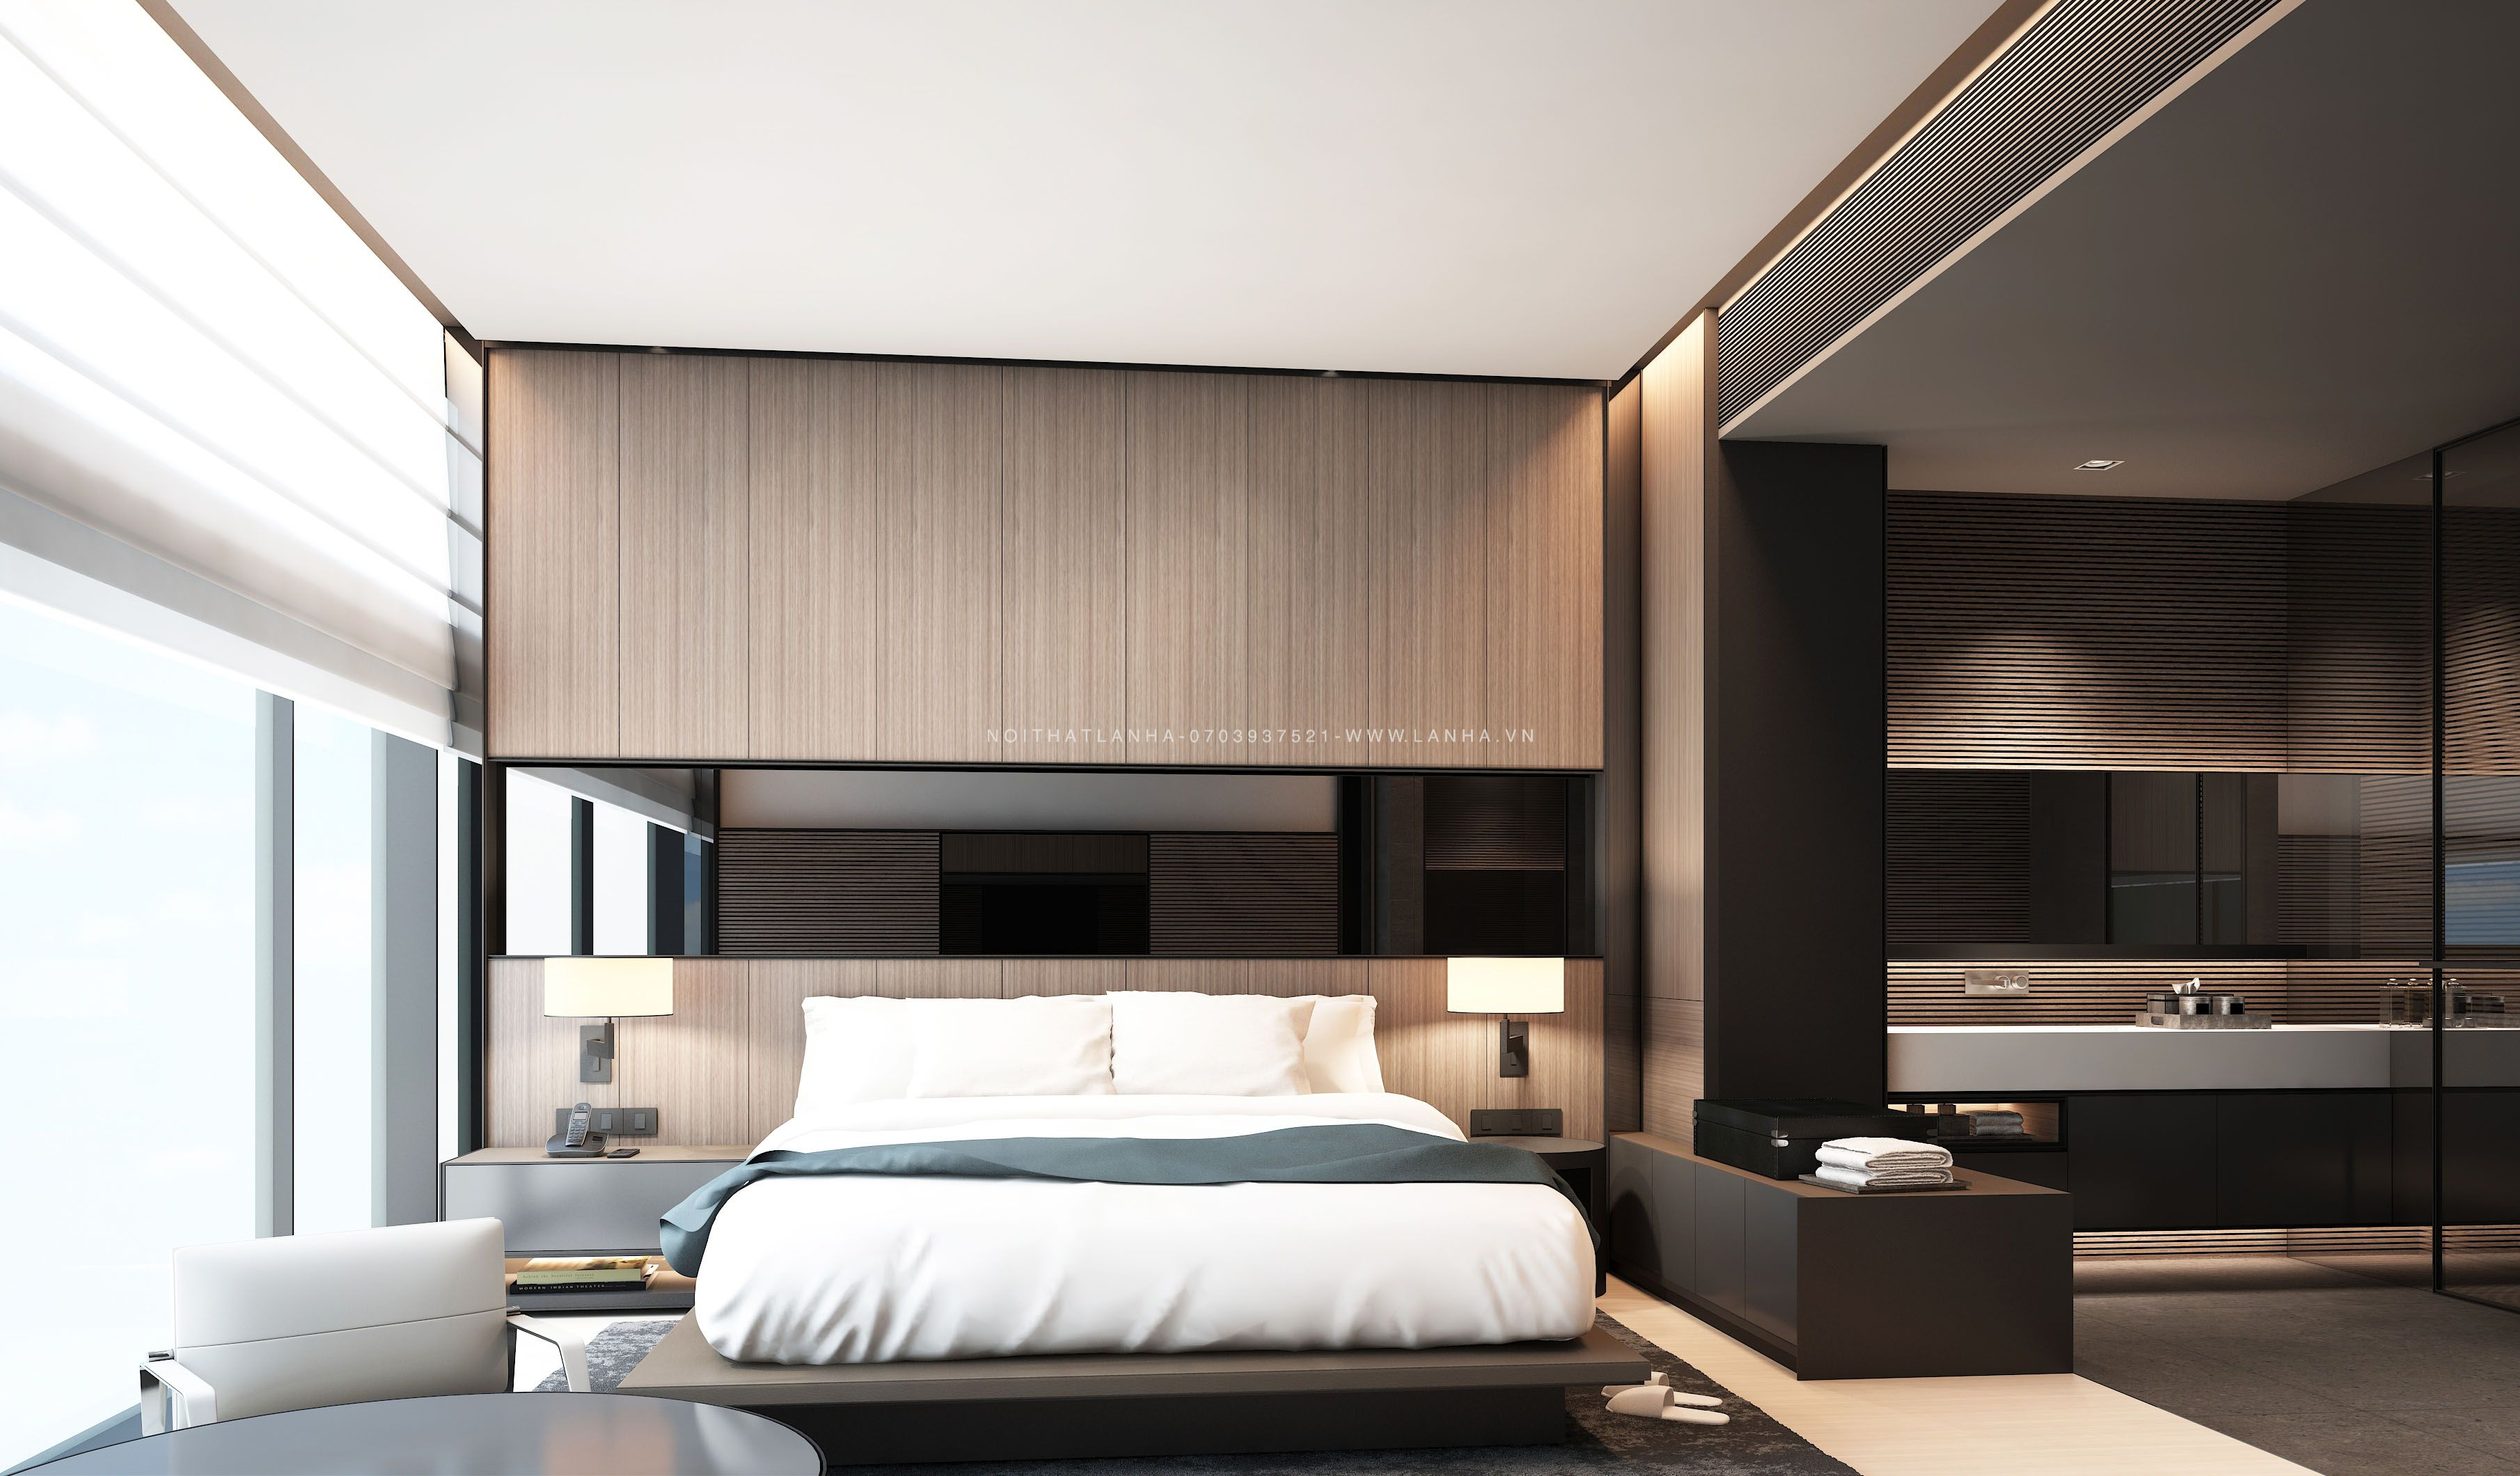  Phòng ngủ được thiết kế theo phong cách tối giản